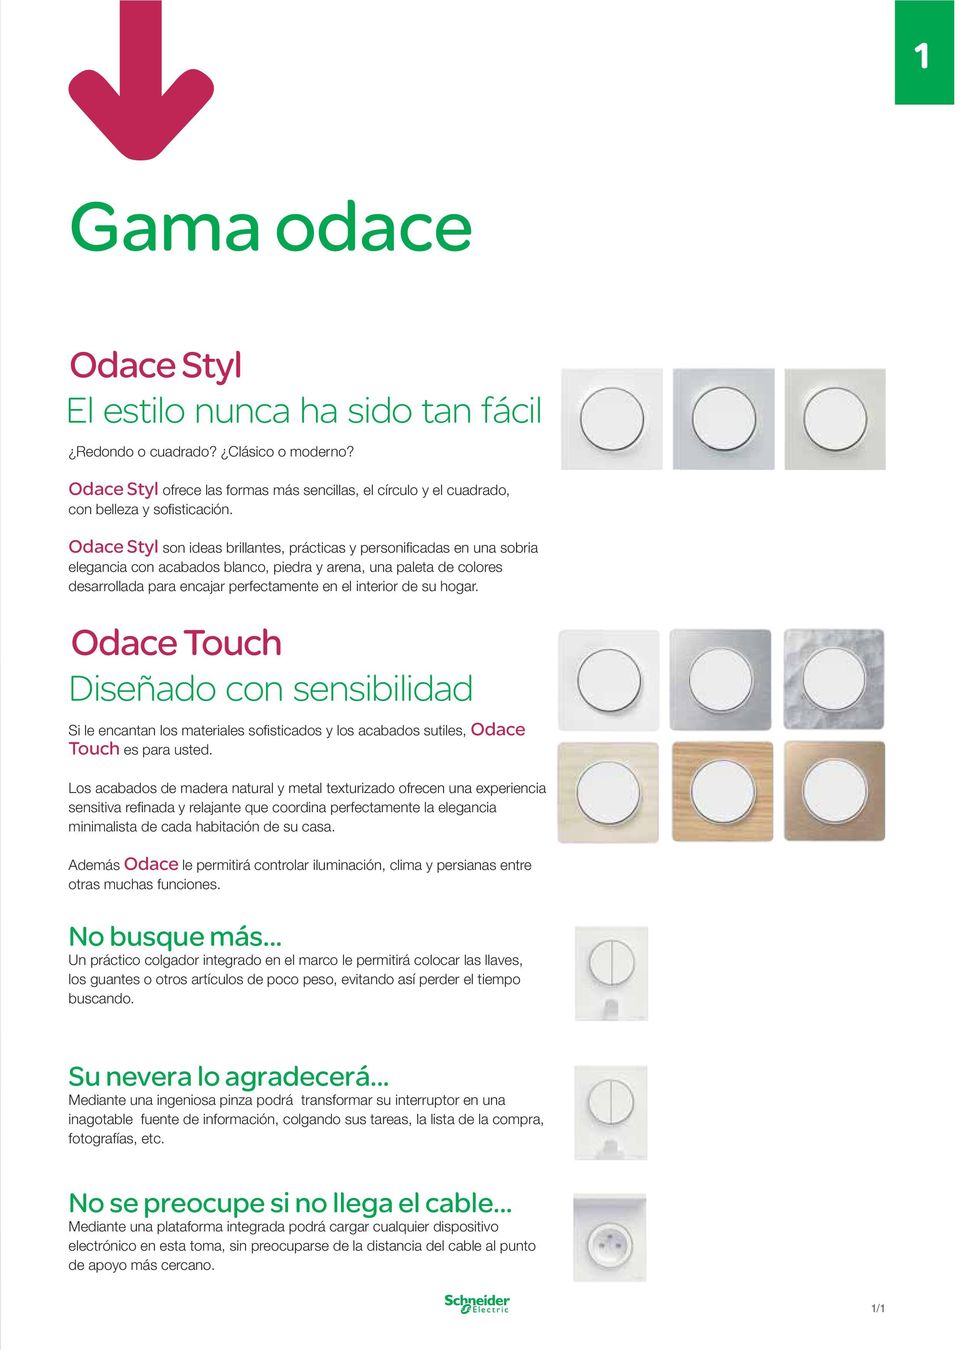 de su hogar. Odace Touch Diseñado con sensibilidad Si le encantan los materiales sofi sticados y los acabados sutiles, Odace Touch es para usted.